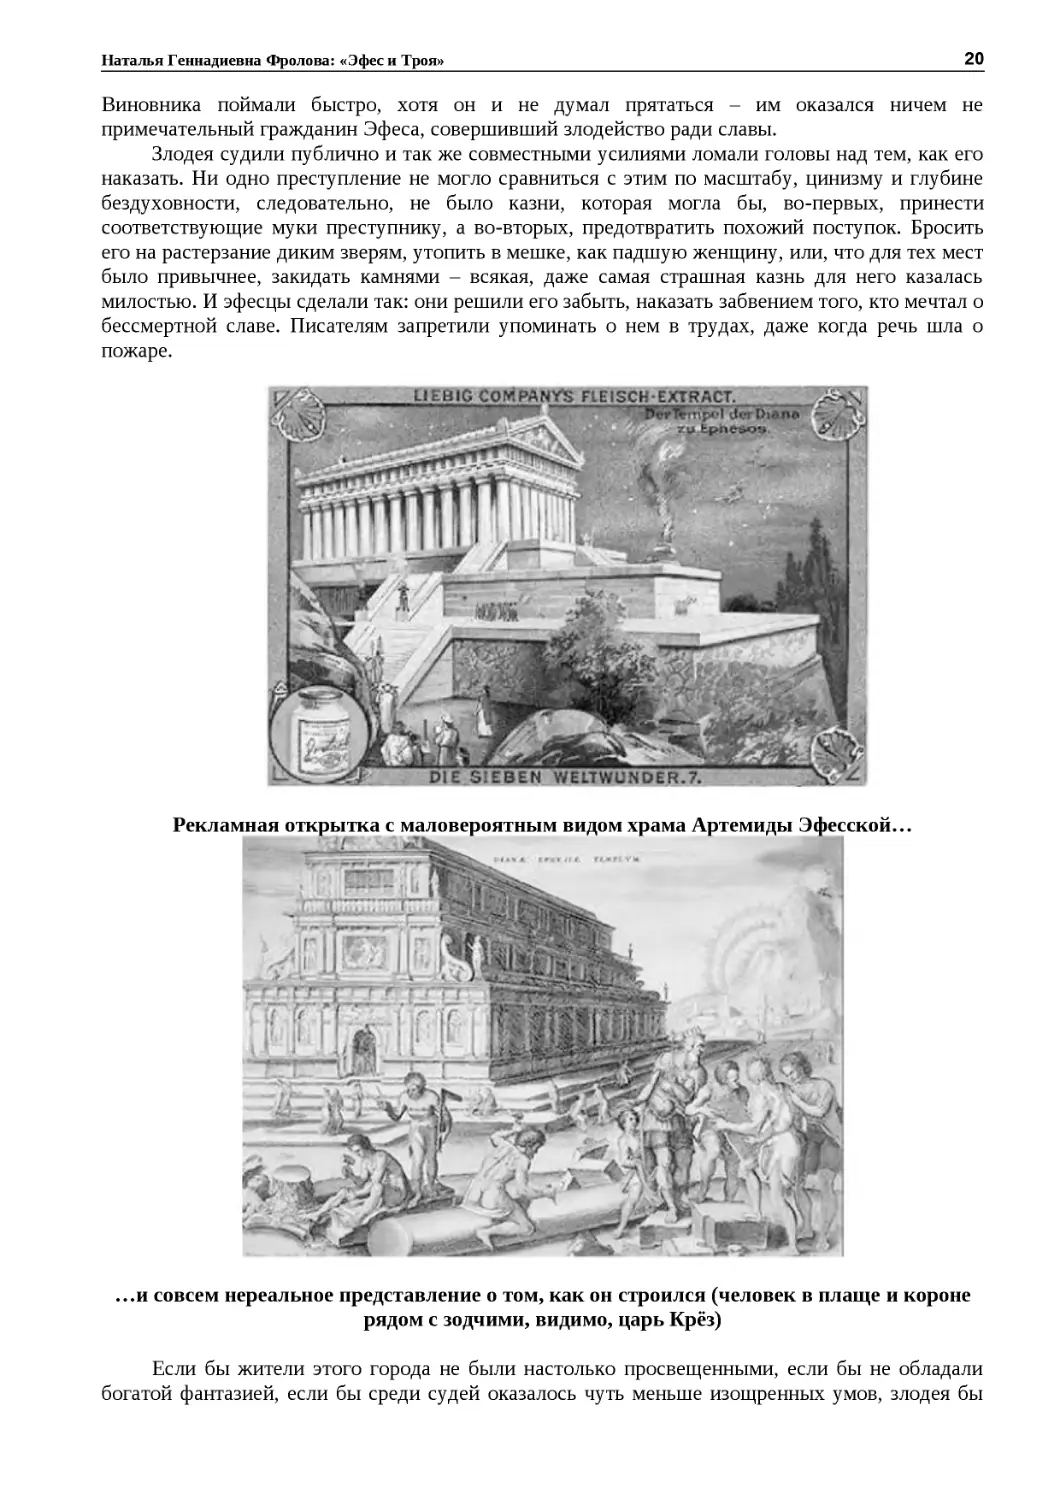 ﻿Рекламная открытка с маловероятным видом храма Артемиды Эфесской
"
﻿…и совсем нереальное представление о том, как он строился øчеловек в плаще и короне рядом с зодчими, видимо, царь Крёз